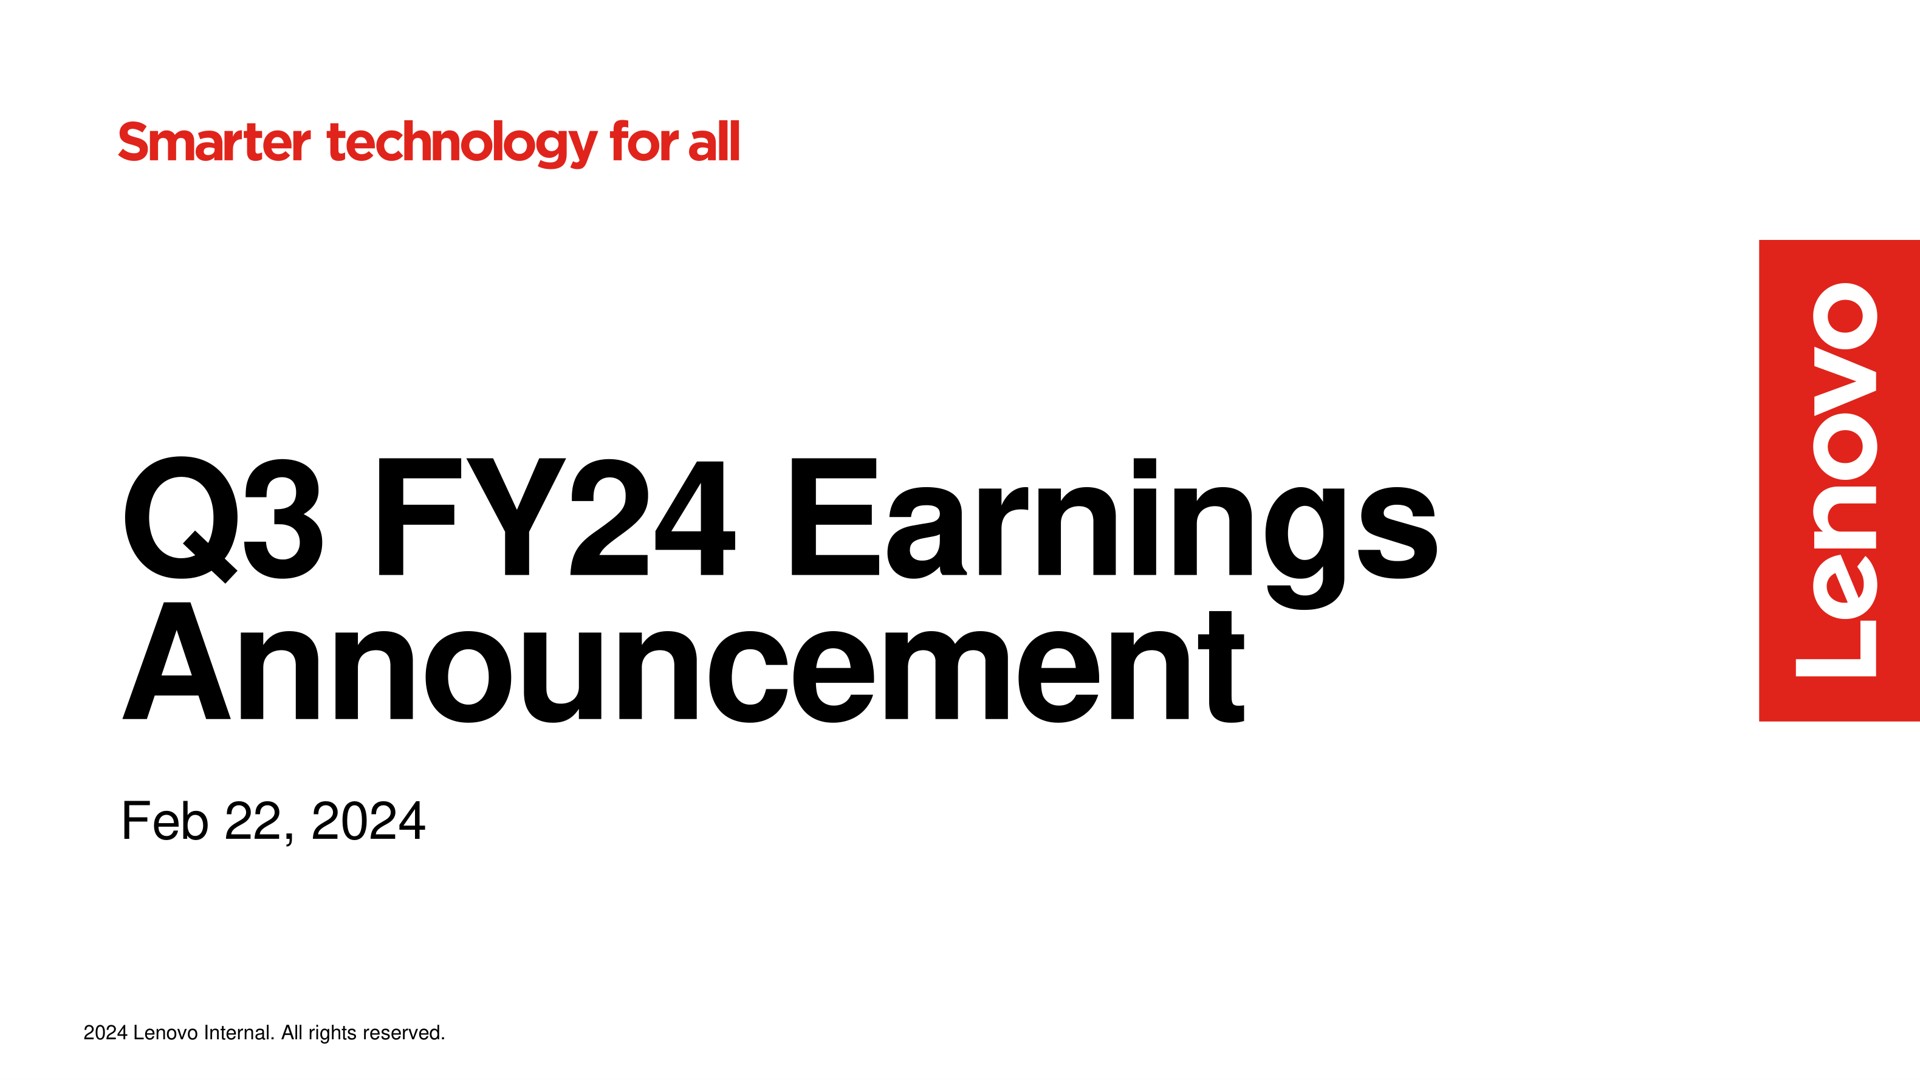 earnings announcement technology for all | Lenovo